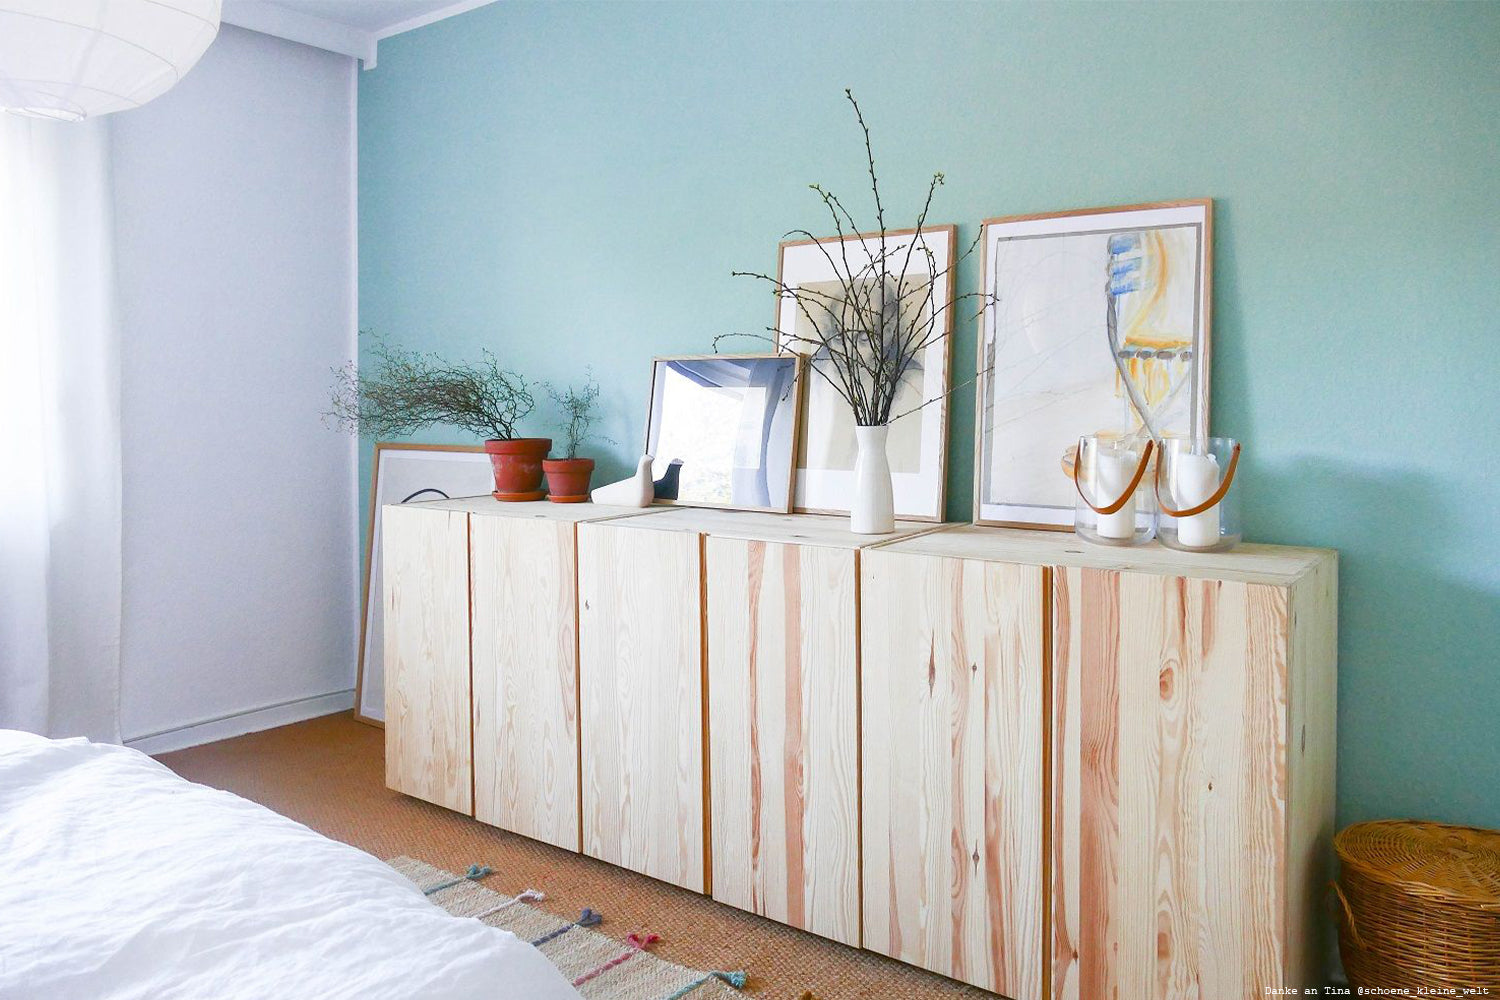 Schlafzimmer mit Wandfarbe in frischem Mintgruen.